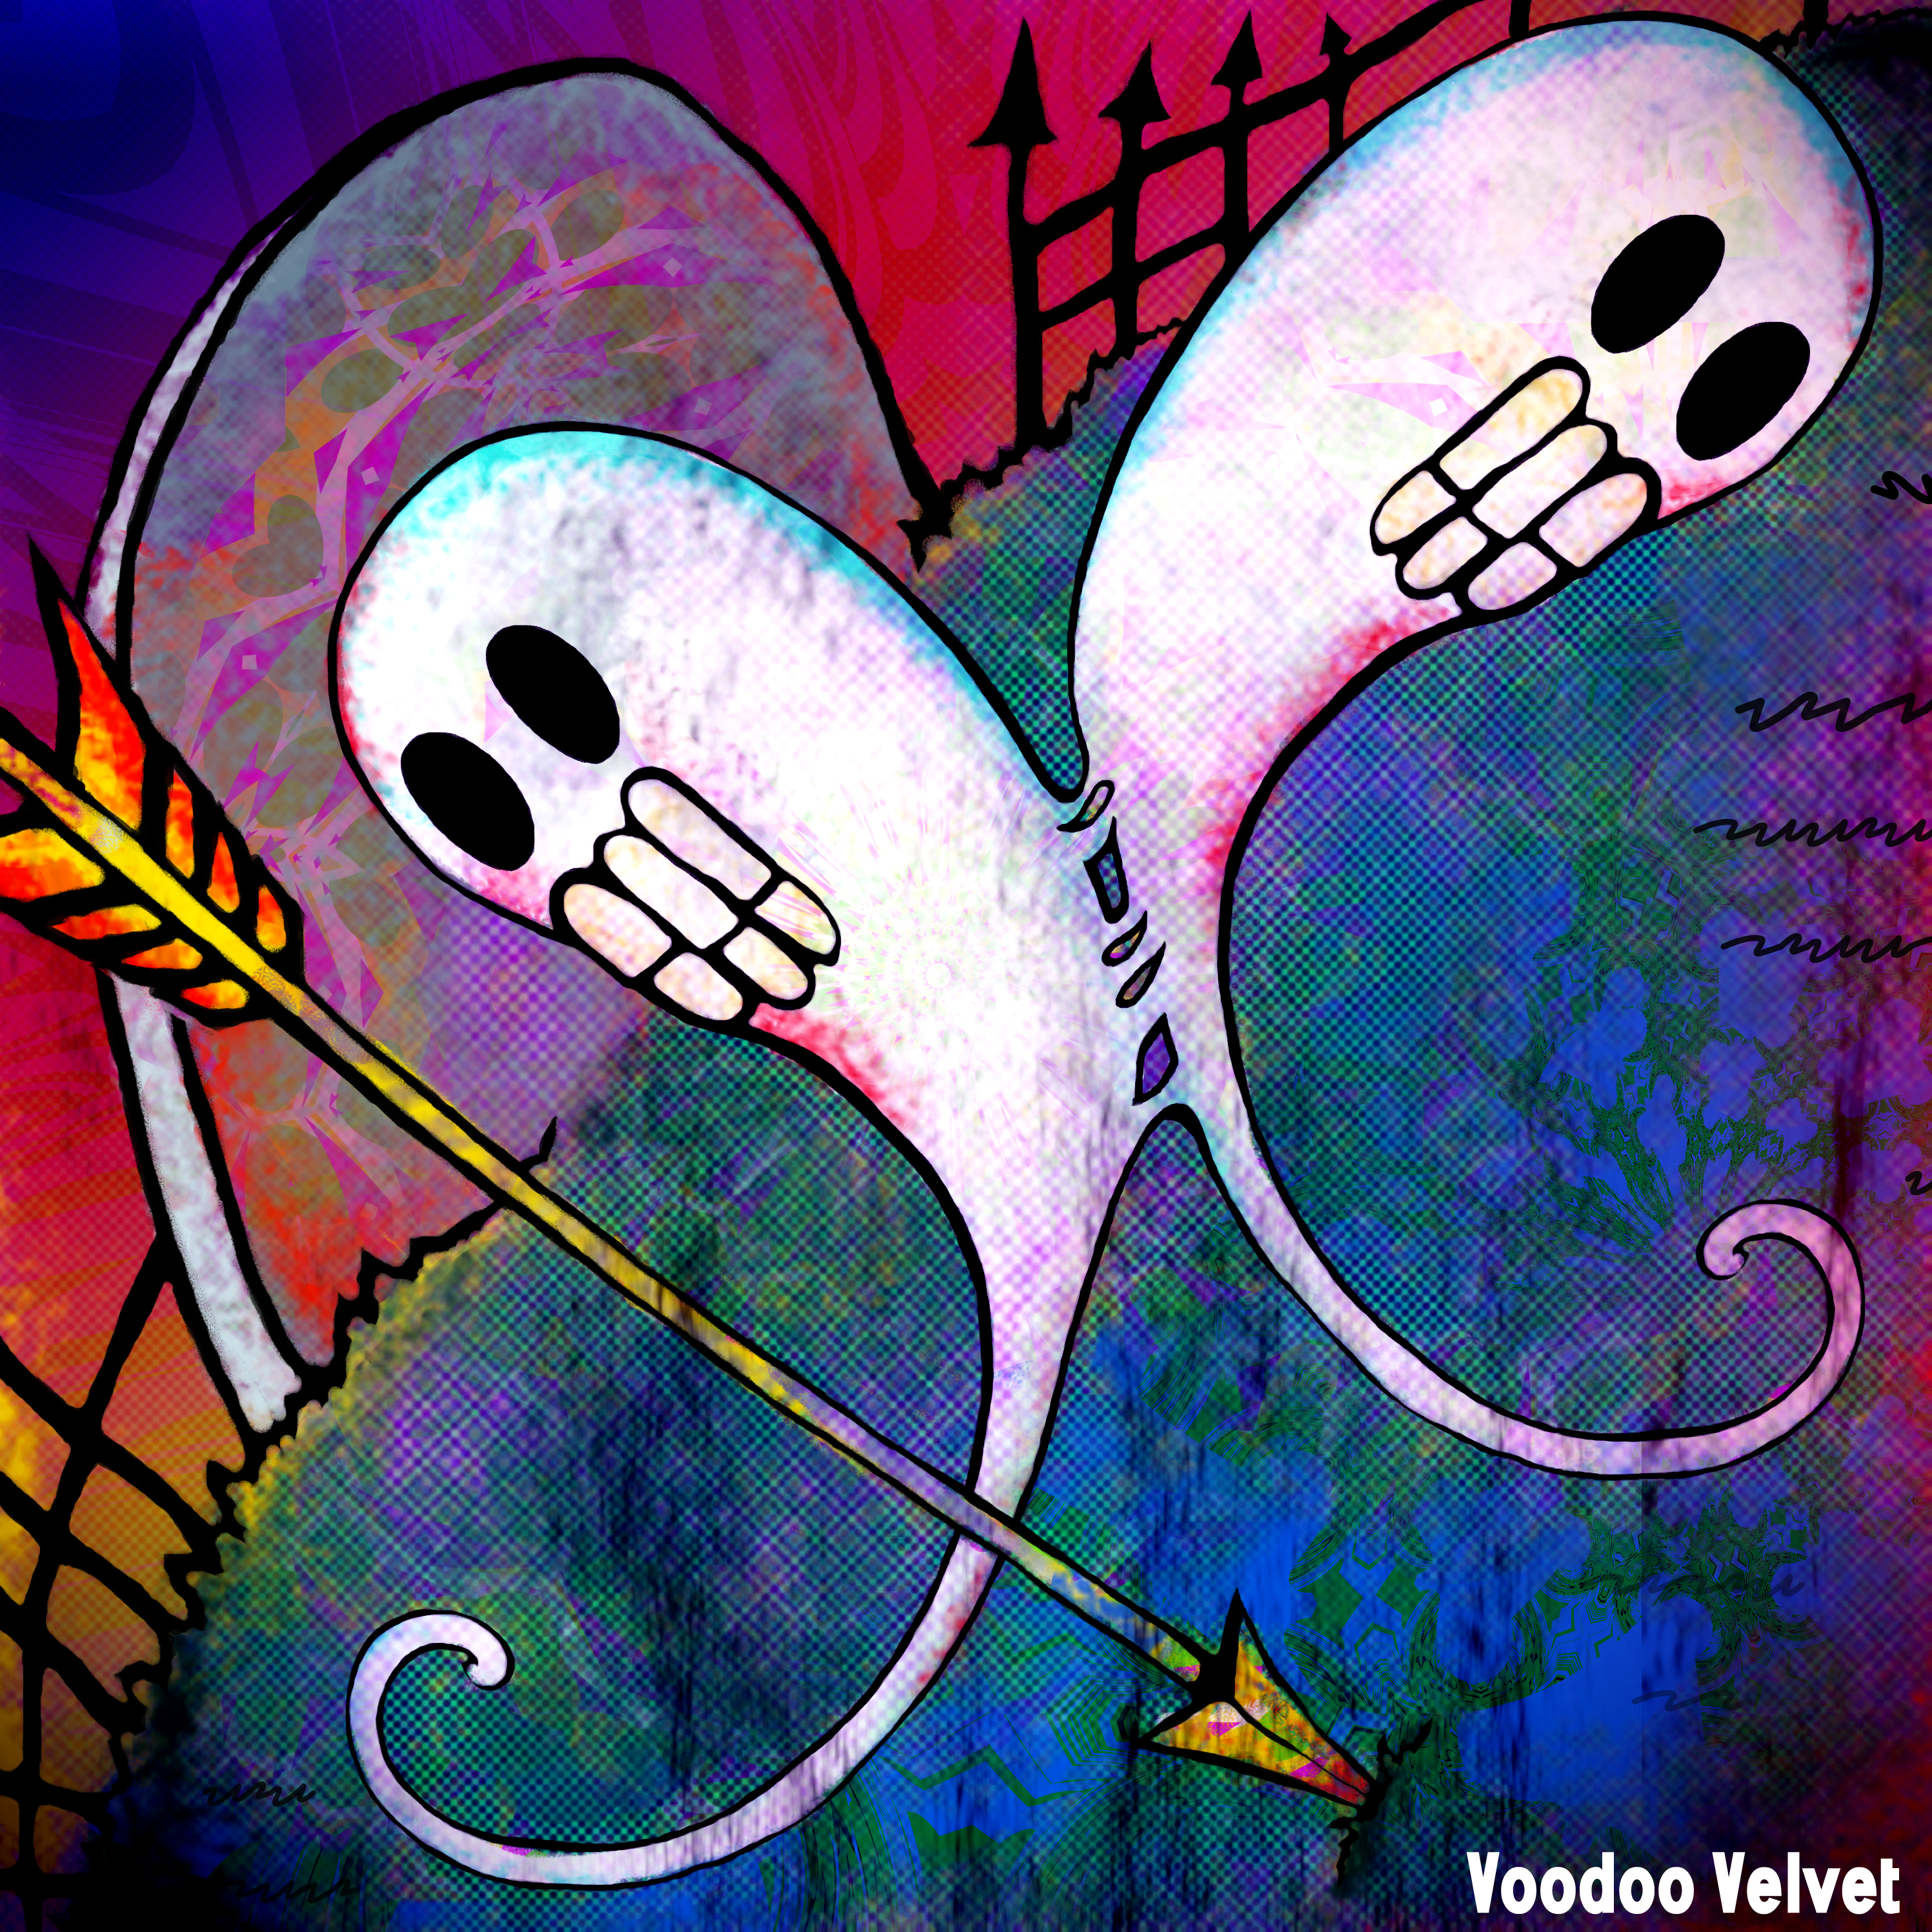 Voodoo Velvet